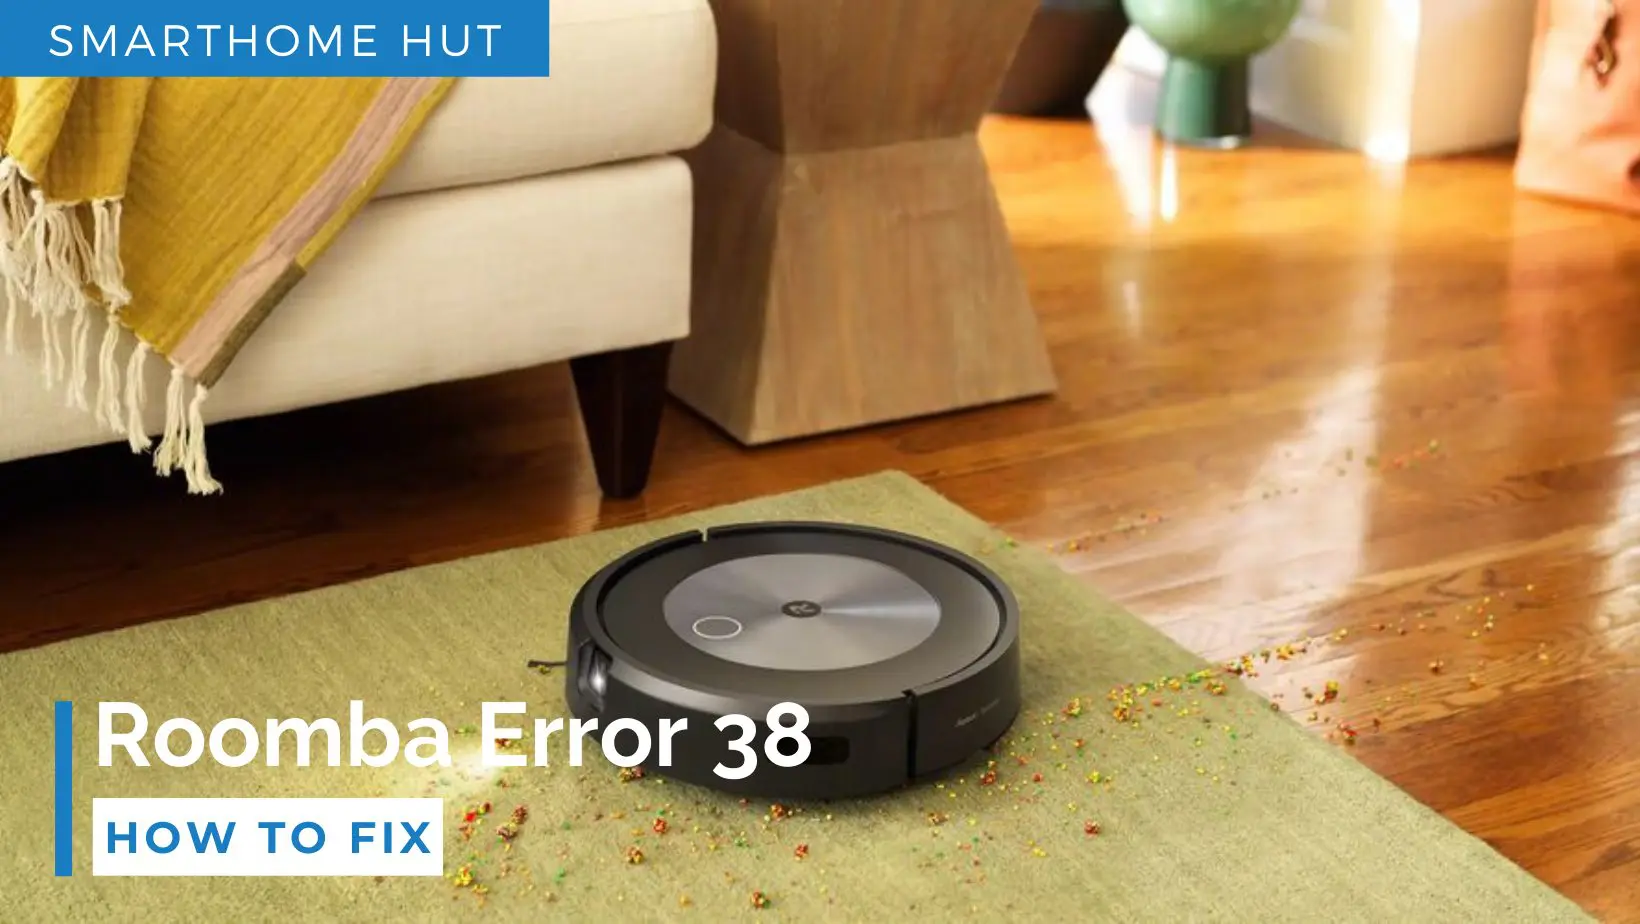 Roomba Error 38 Fix in Seconds Smarthome Hut